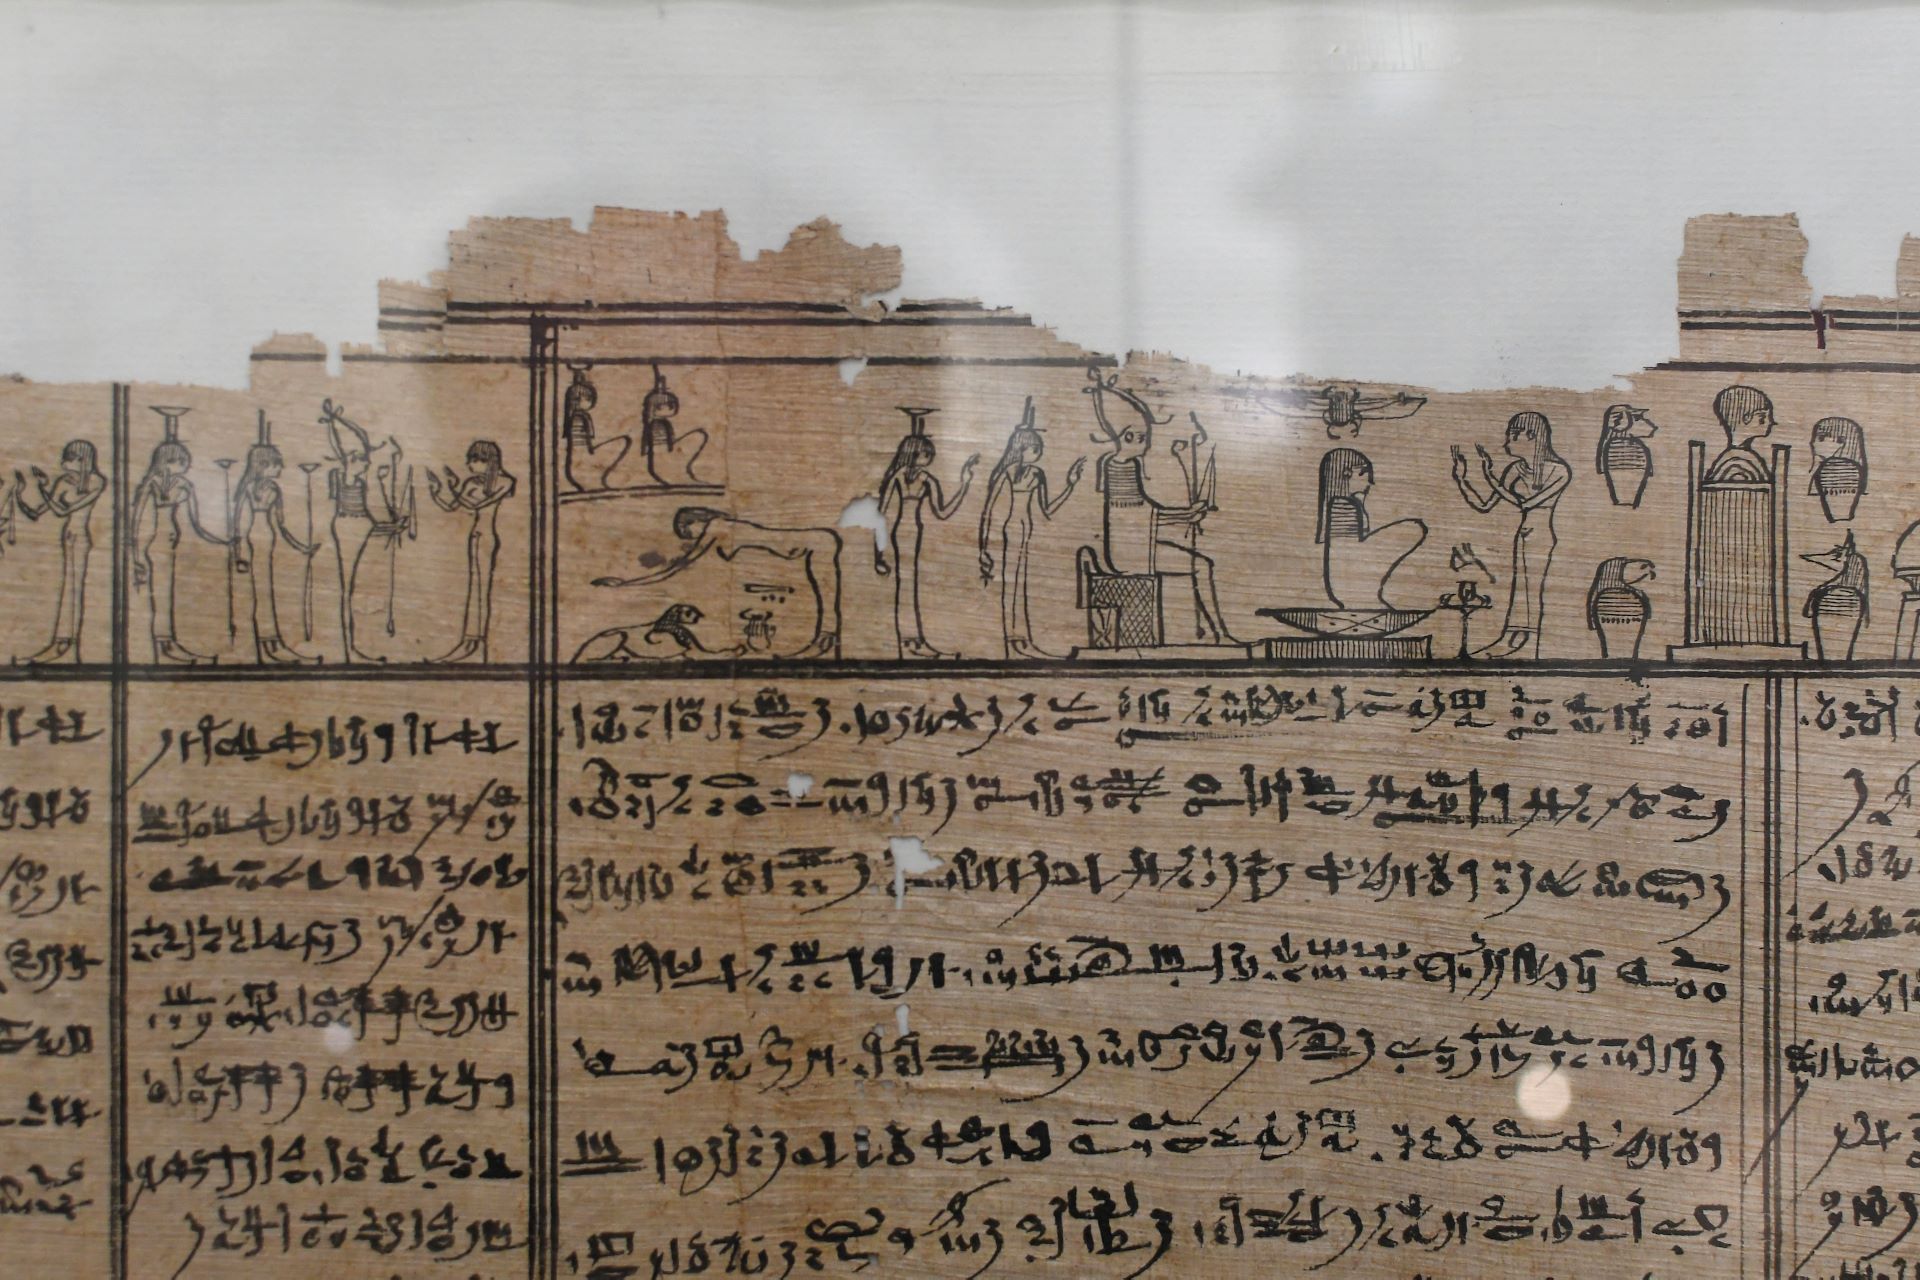 blog:2018-11-17-texte-aus-ferner-zeit:2018-11-17-wien-papyrusmuseum-061b.jpg